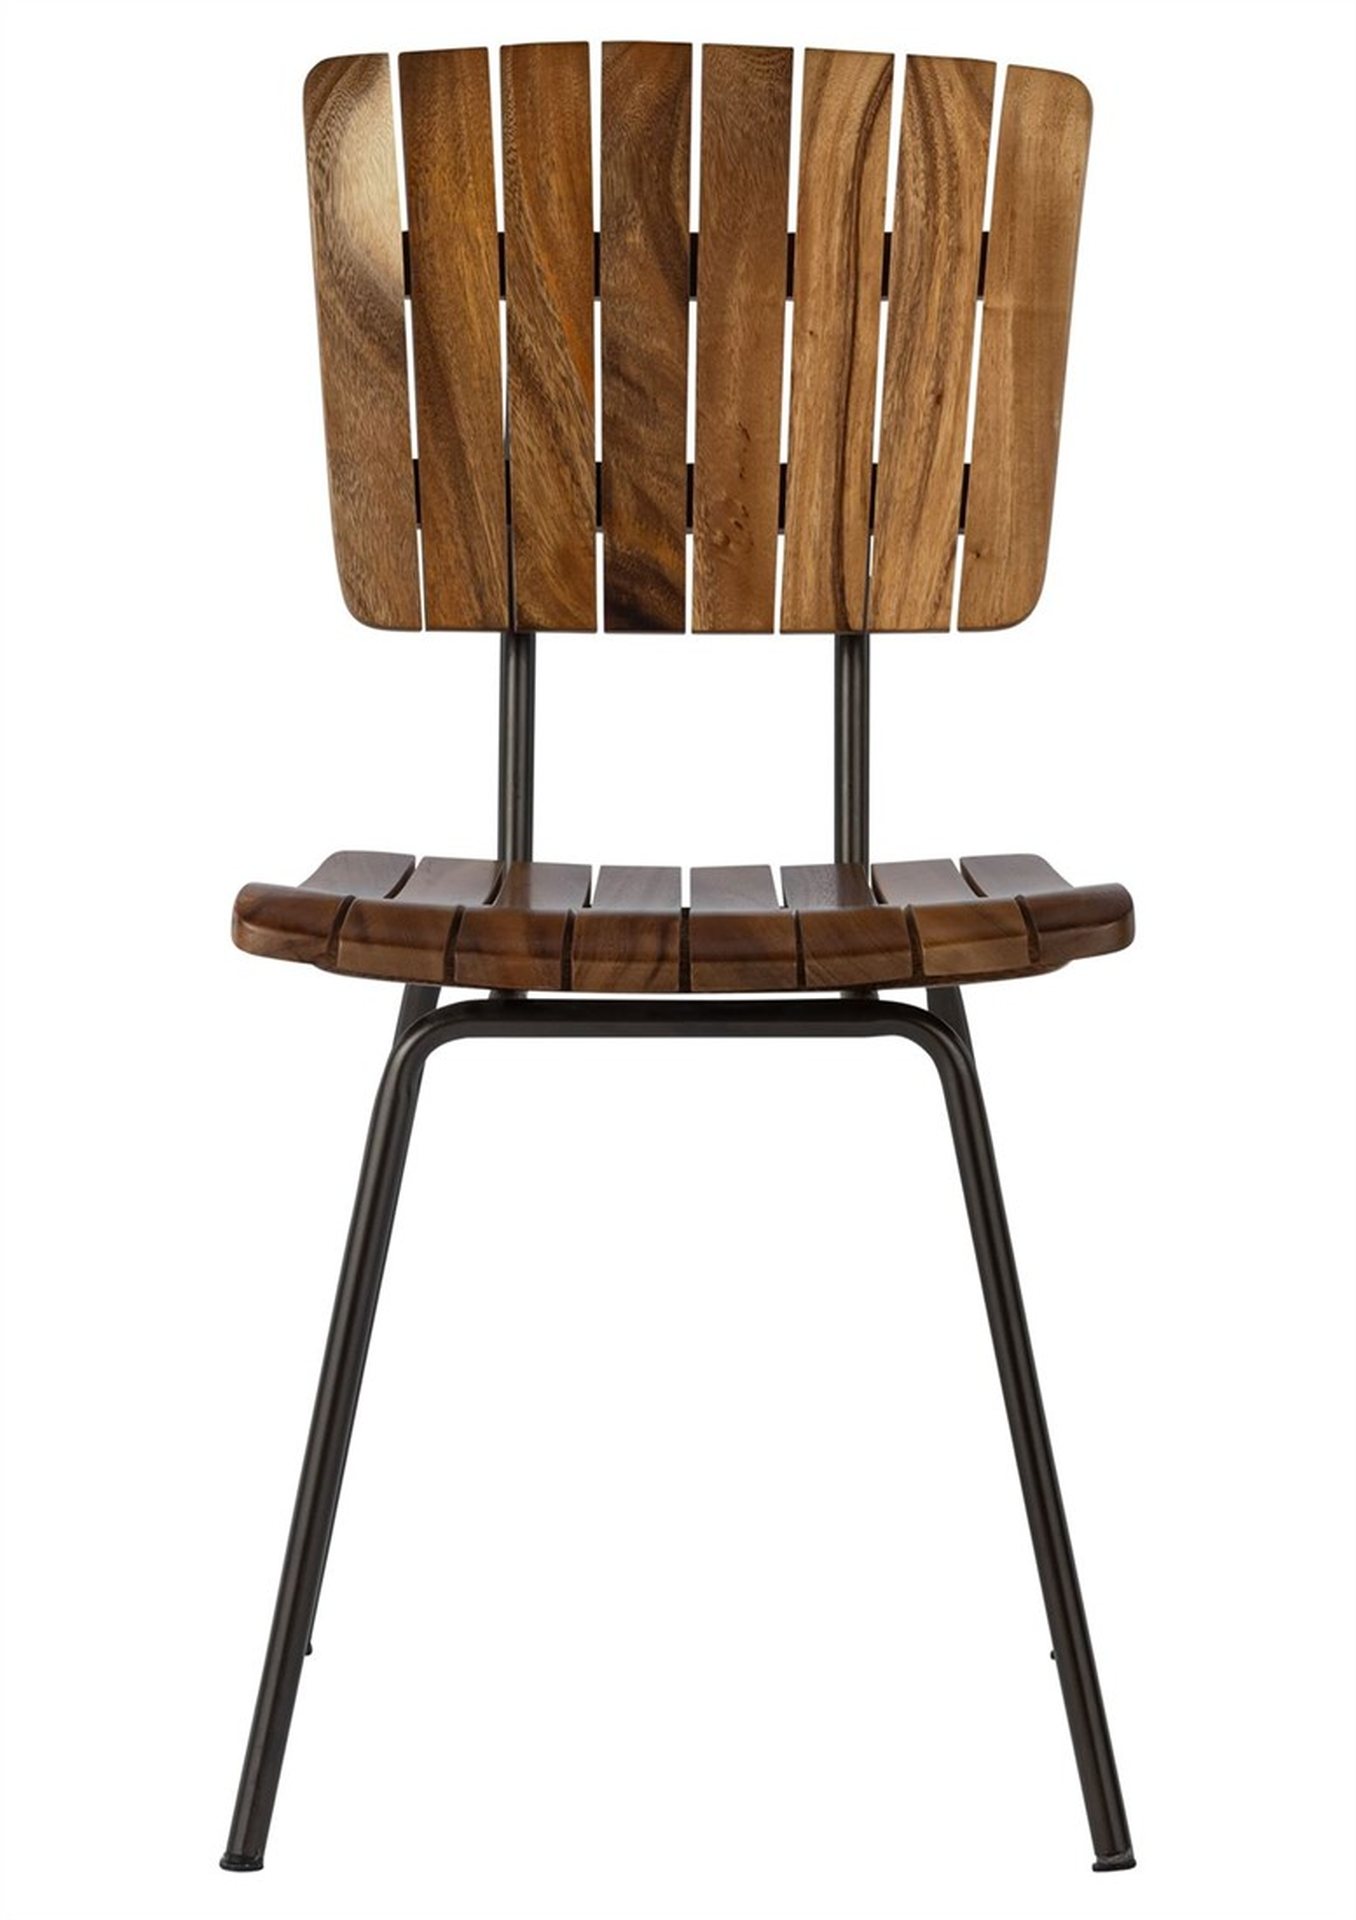 Der Esszimmerstuhl Flare überzeugt mit seinem massivem aber auch industriellem Design. Gefertigt wurde der Stuhl aus massivem Suar Holz, welches einen natürlichen Farbton besitzt. Das Gestell ist aus Metall und ist schwarz.